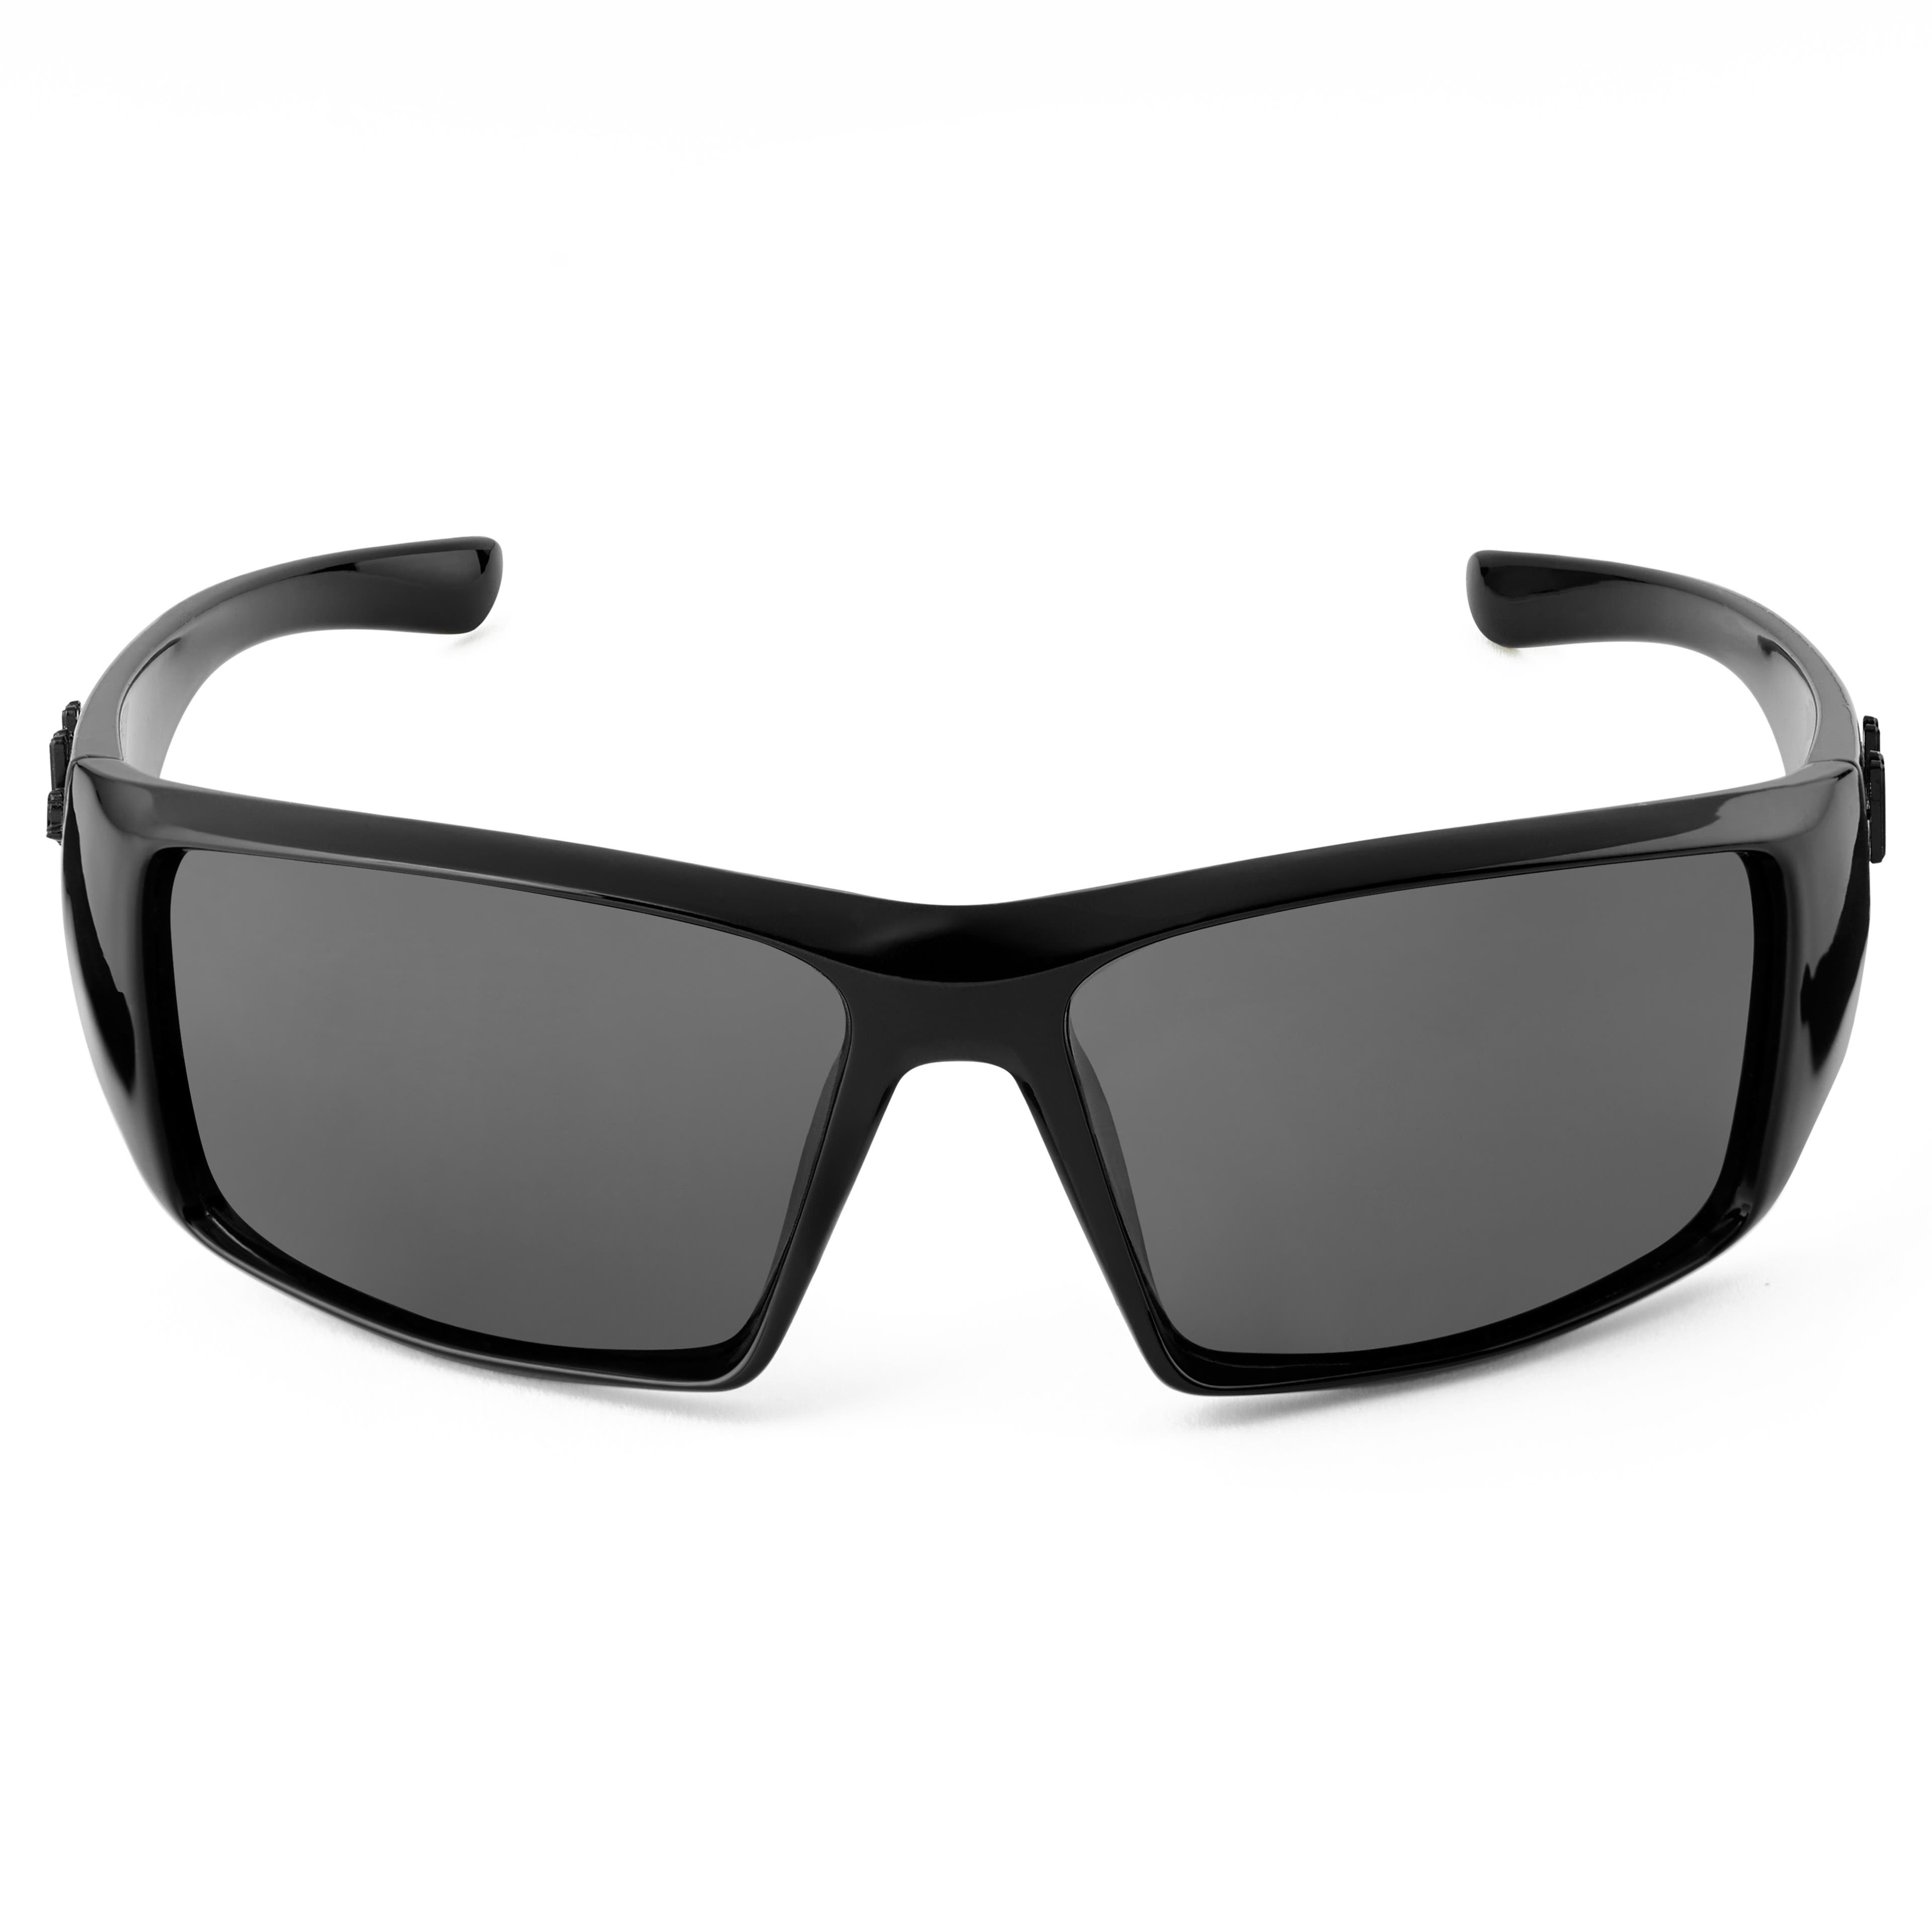 Черно-сиви поляризирани слънчеви очила категория 3,5 Mick Verge